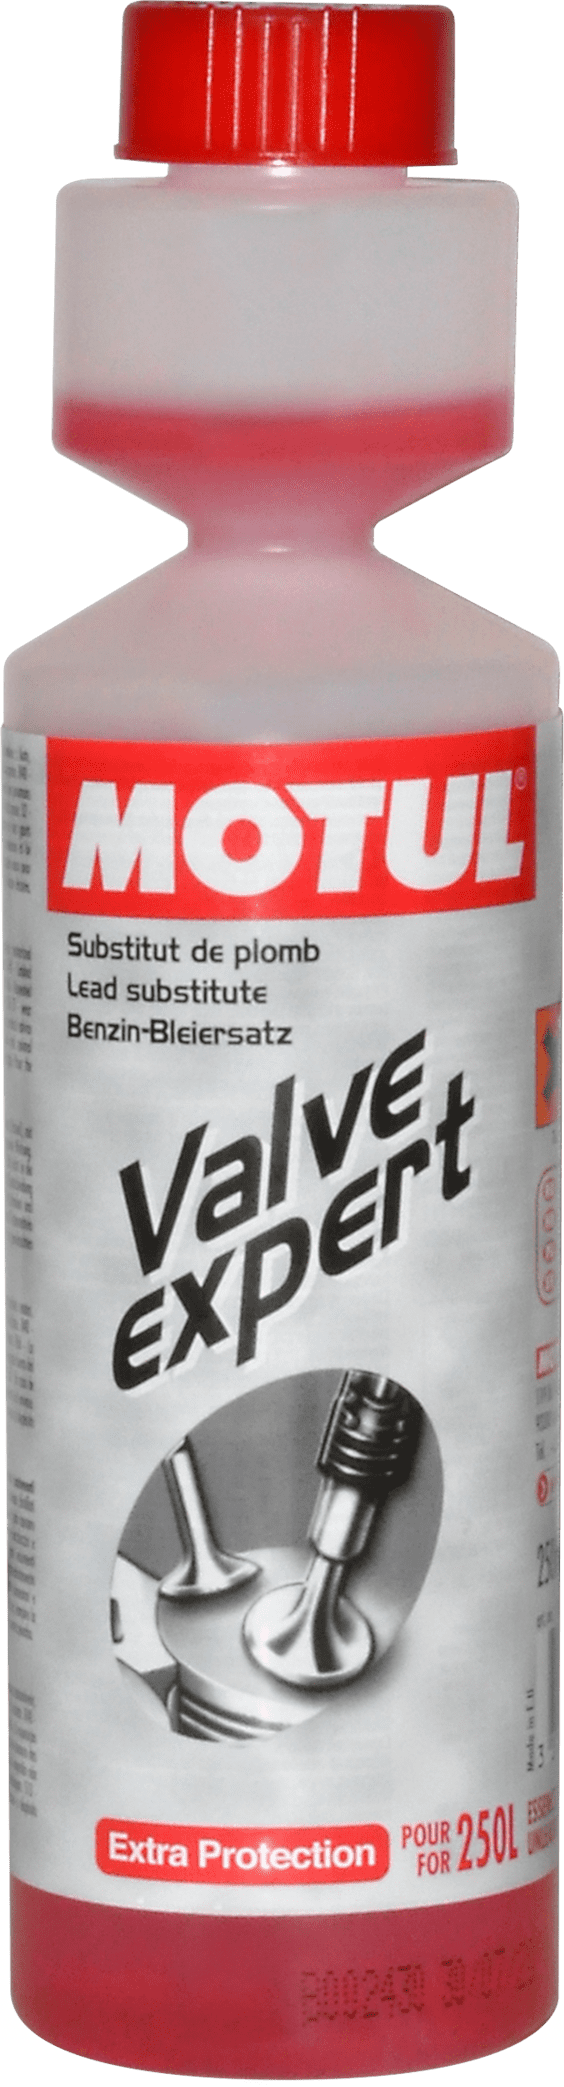 Motul Valve Expert, 250 ml